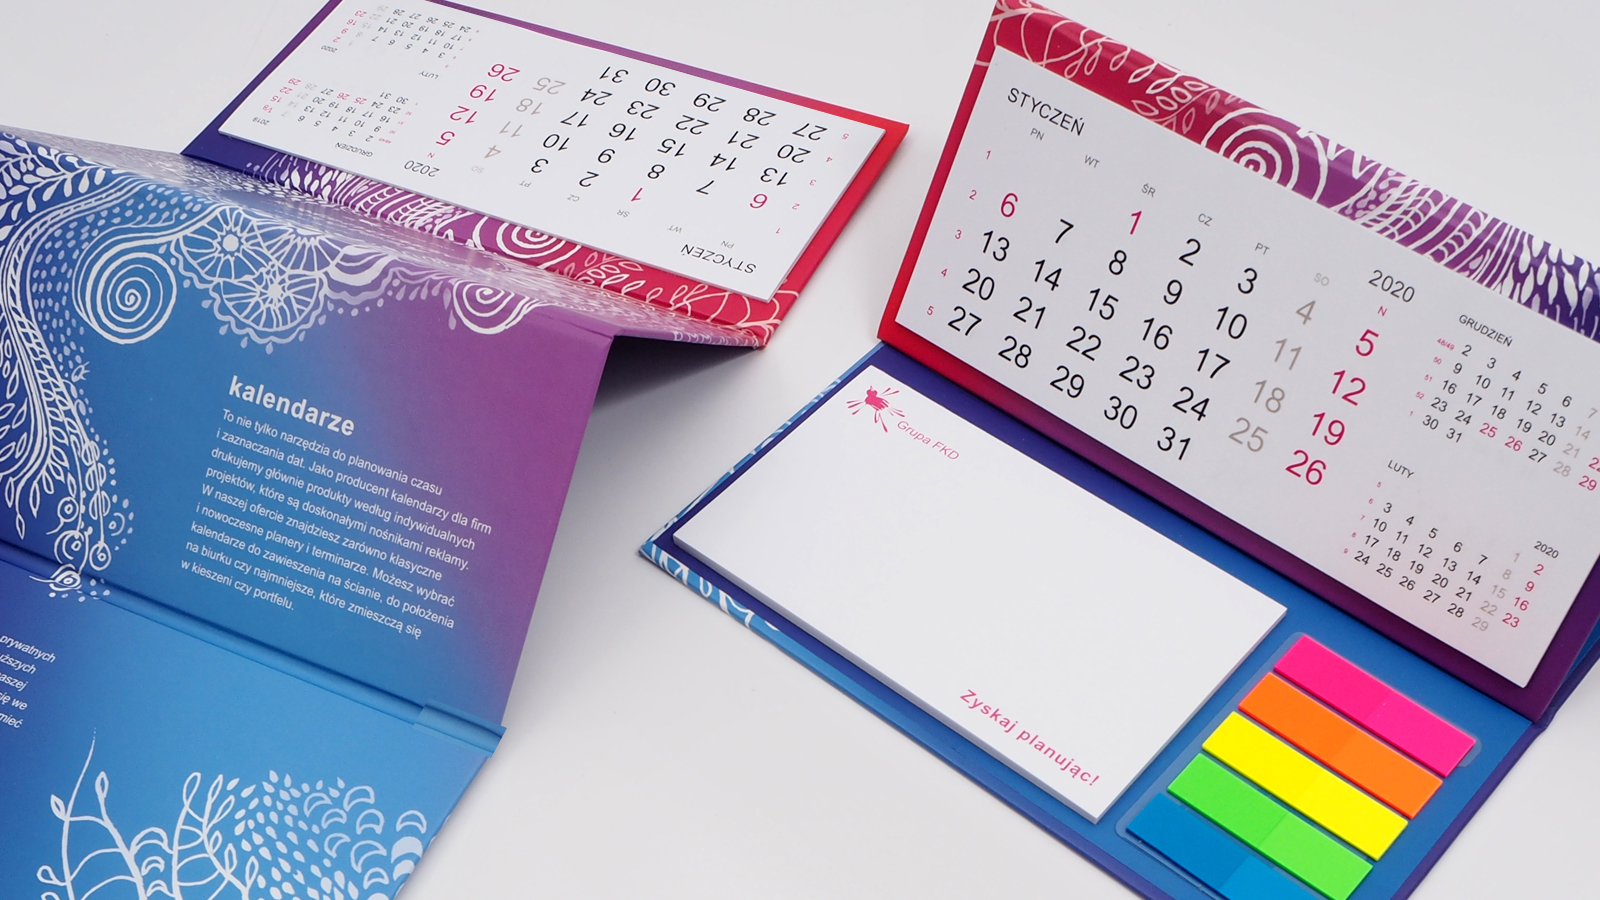 FKD – kalendarz biurkowy stojący (piramidka) z notesem i znacznikami + koperta